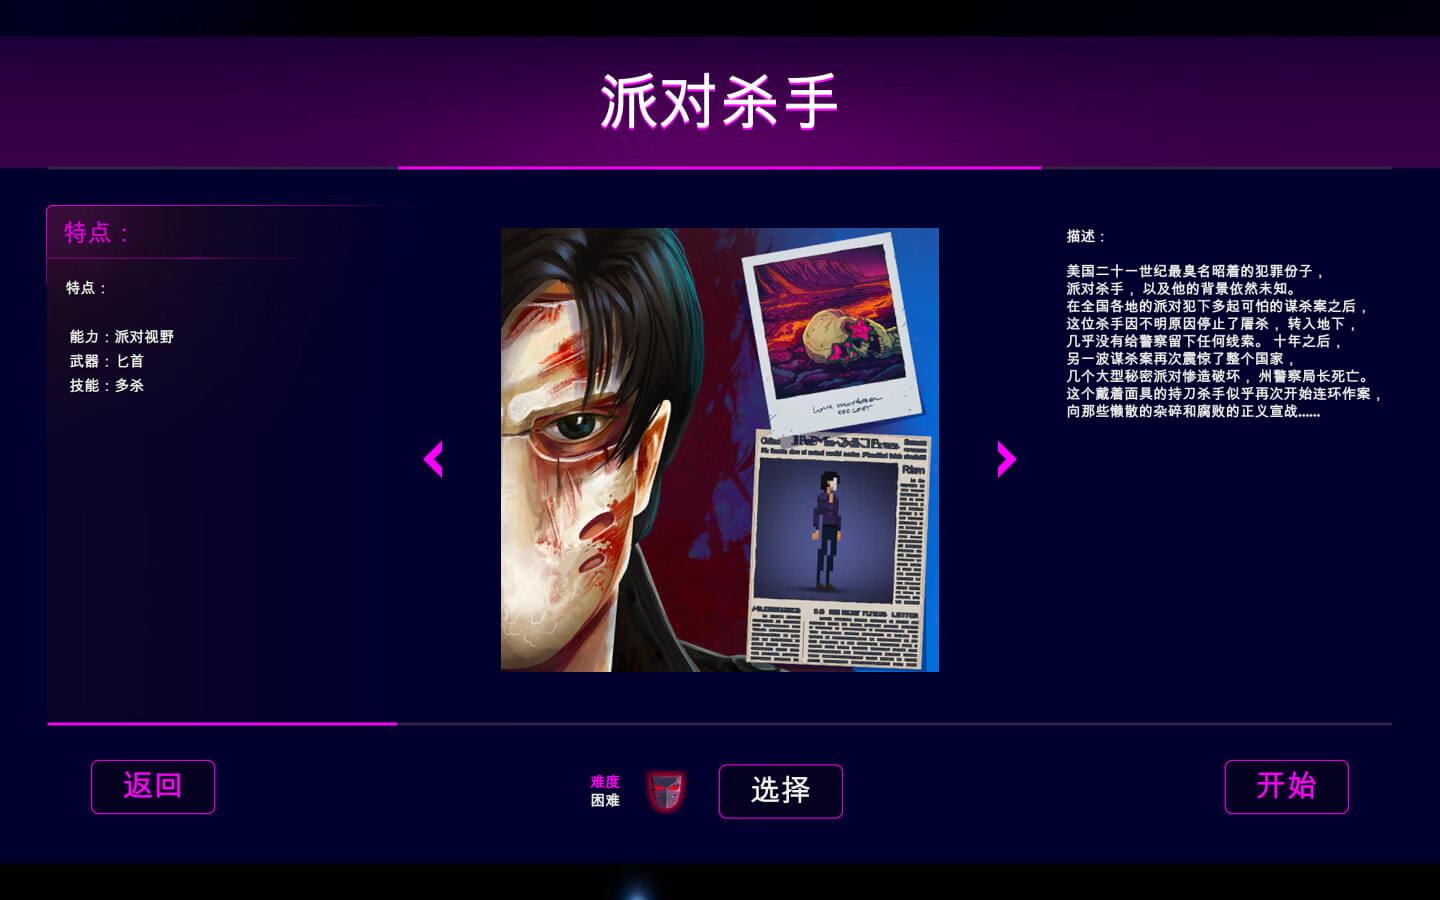 疯狂派对2 Party Hard 2 for Mac v1.1.004.r 中文原生版